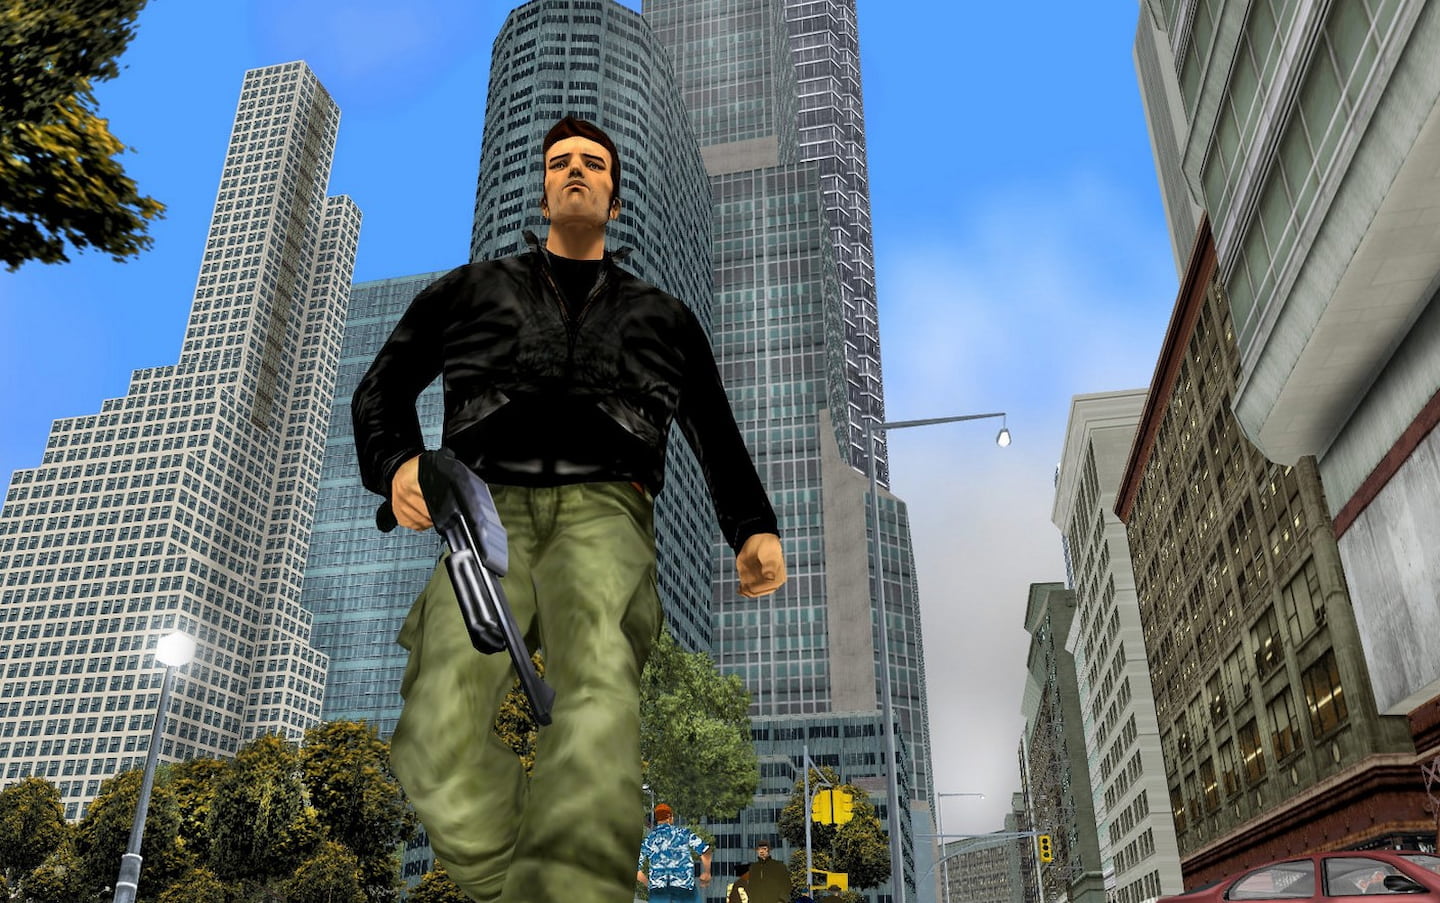 Tipy na GTA Remastered Trilogy vdýchli nový život klasikám z éry PS2 3